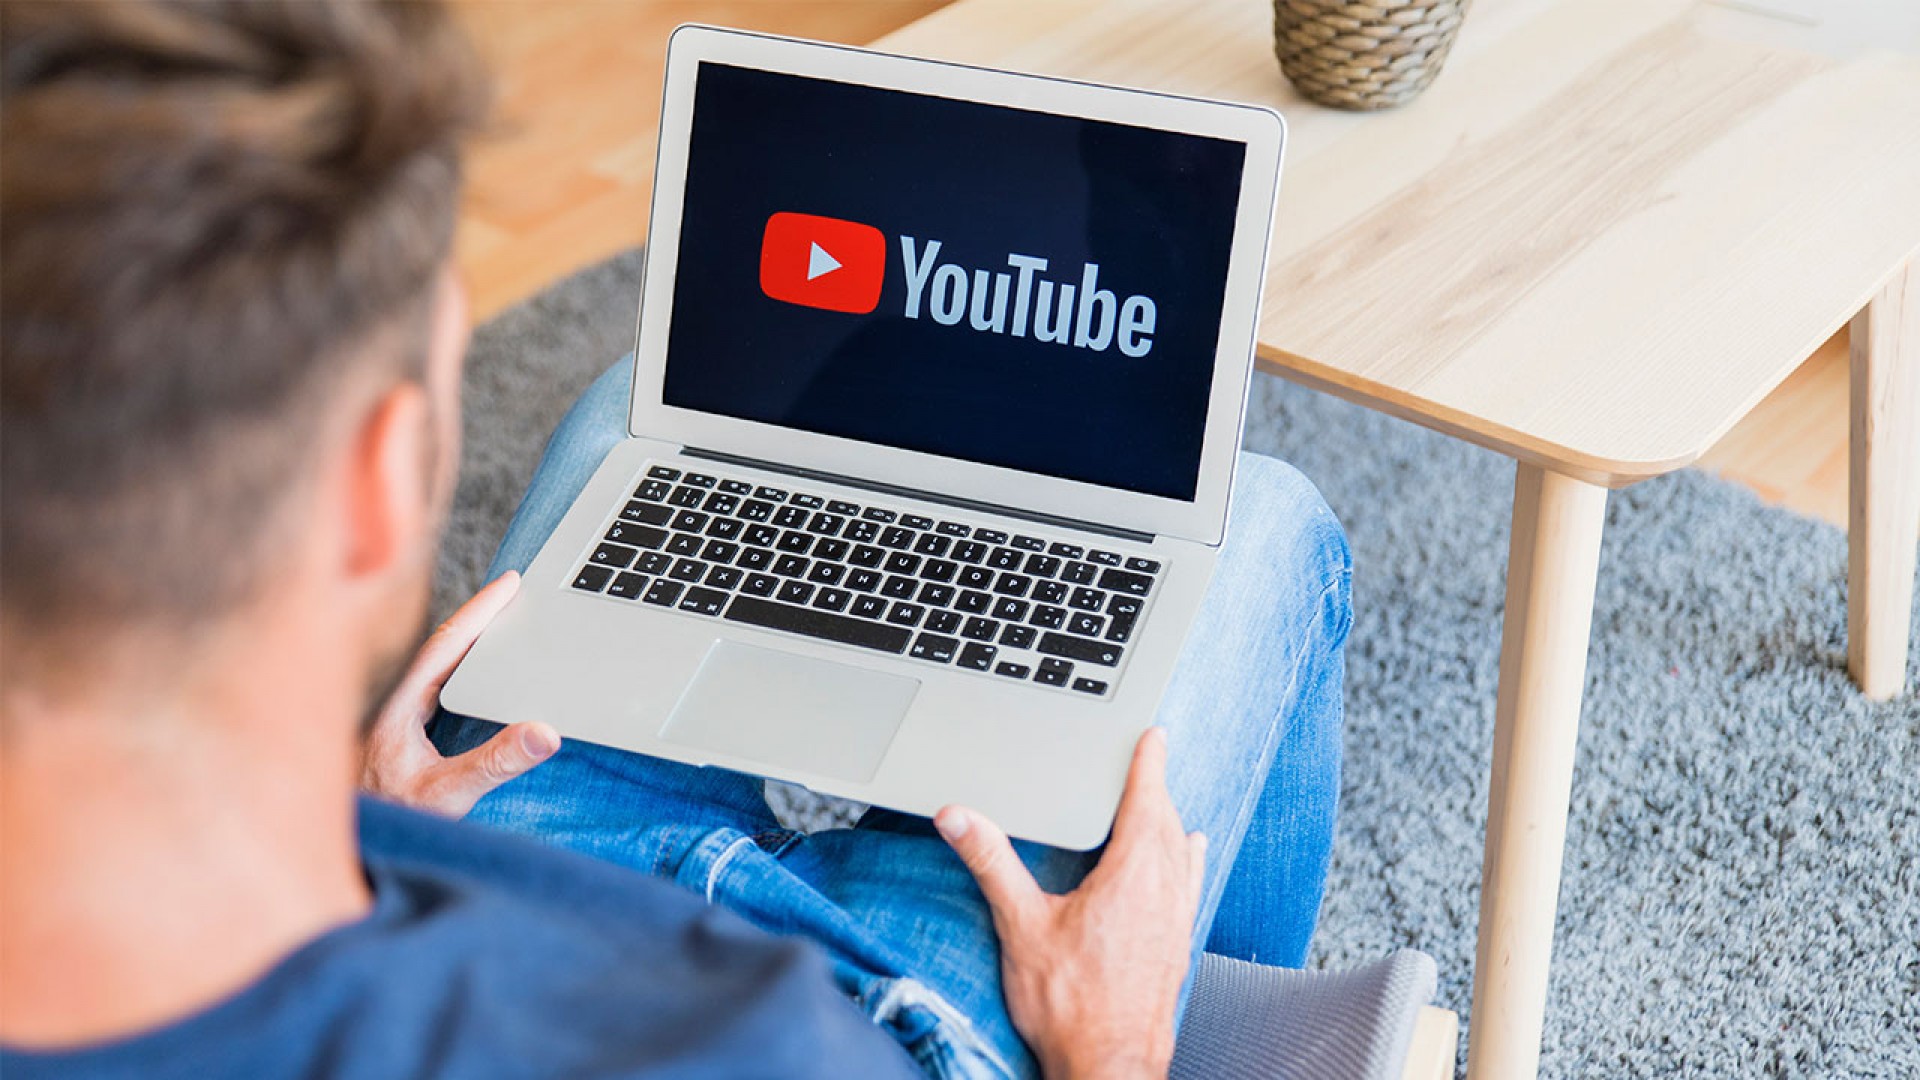 Cẩm nang sử dụng YouTube - một trong các cách học tiếng Anh hiệu quả, bạn đã biết?